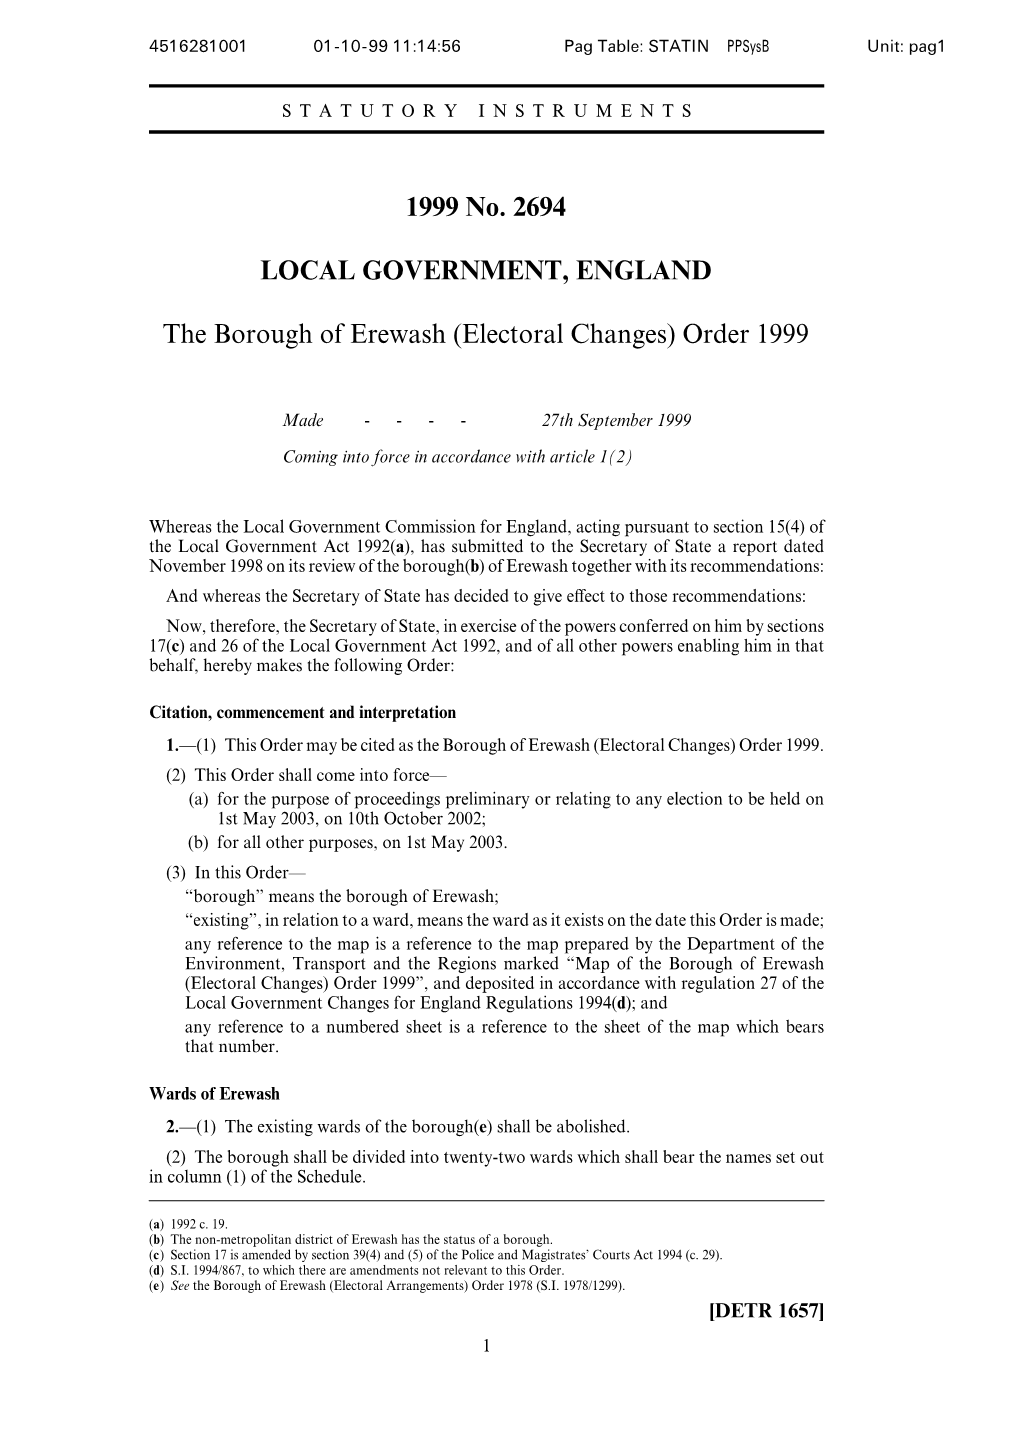 Electoral Changes) Order 1999